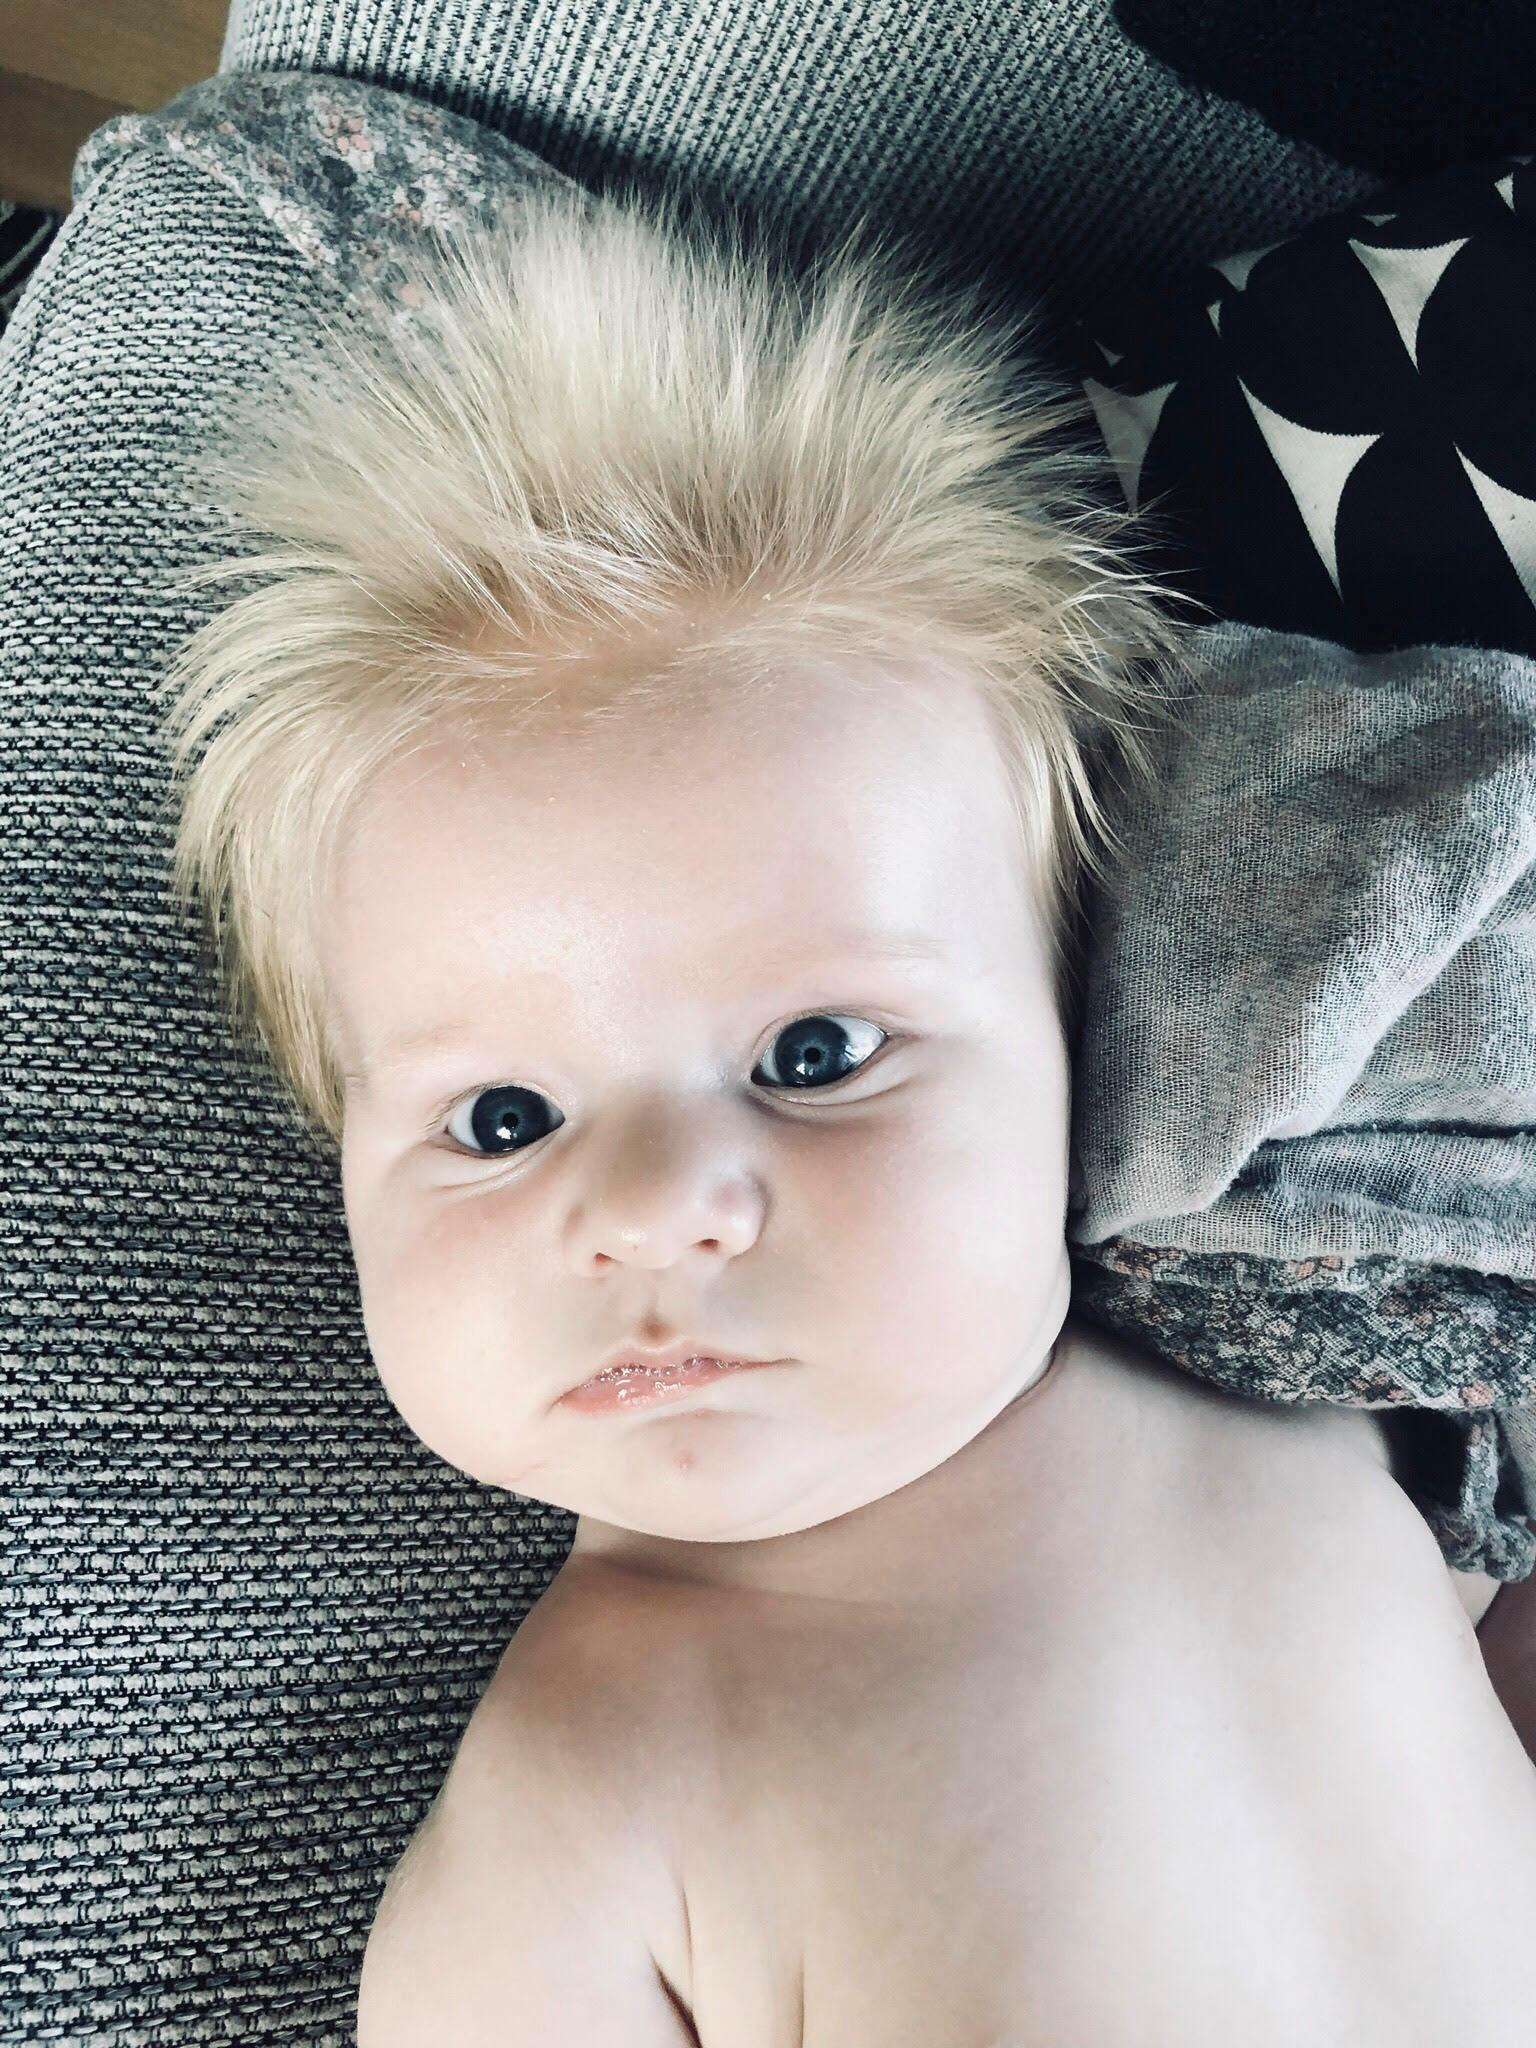 Här är bebisen Ville när han är tre månader. Numera är han ett år och klippt enligt mamman Linn Hedlund från Rödeby utanför Karlskrona.